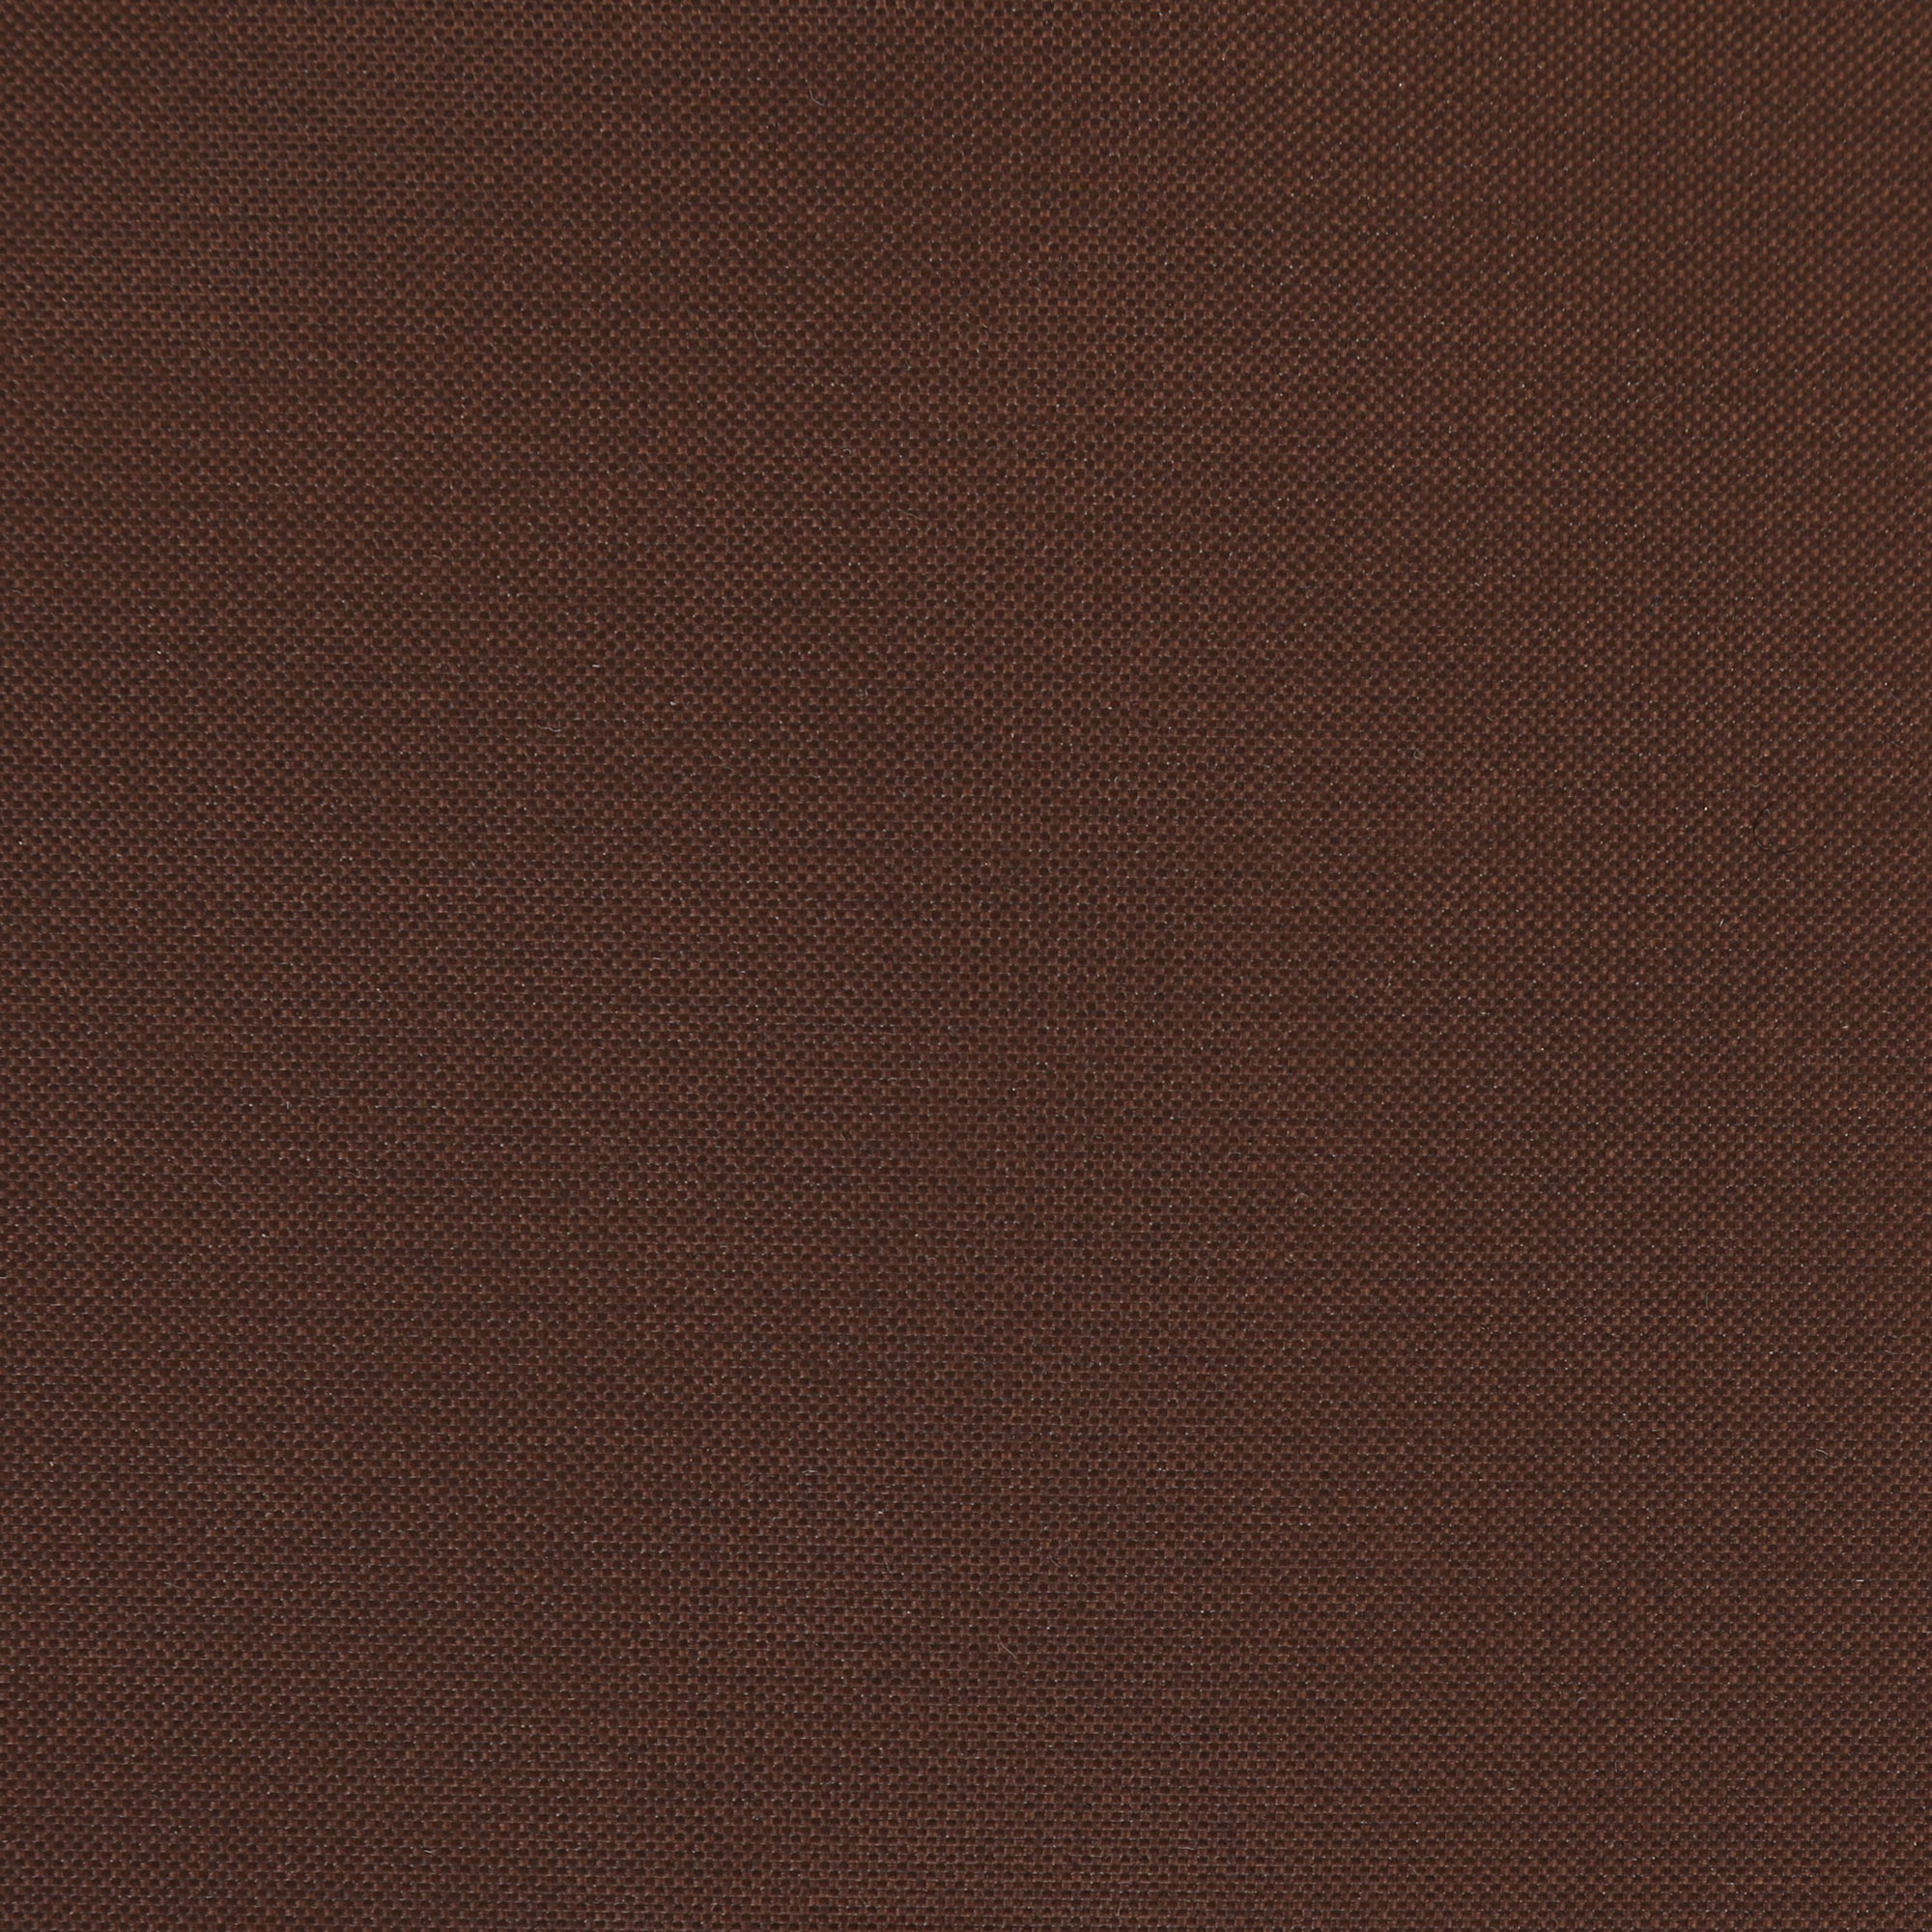 Чеxол для скамейки Profgarden 190x75x65 см, цвет коричневый - фото 5